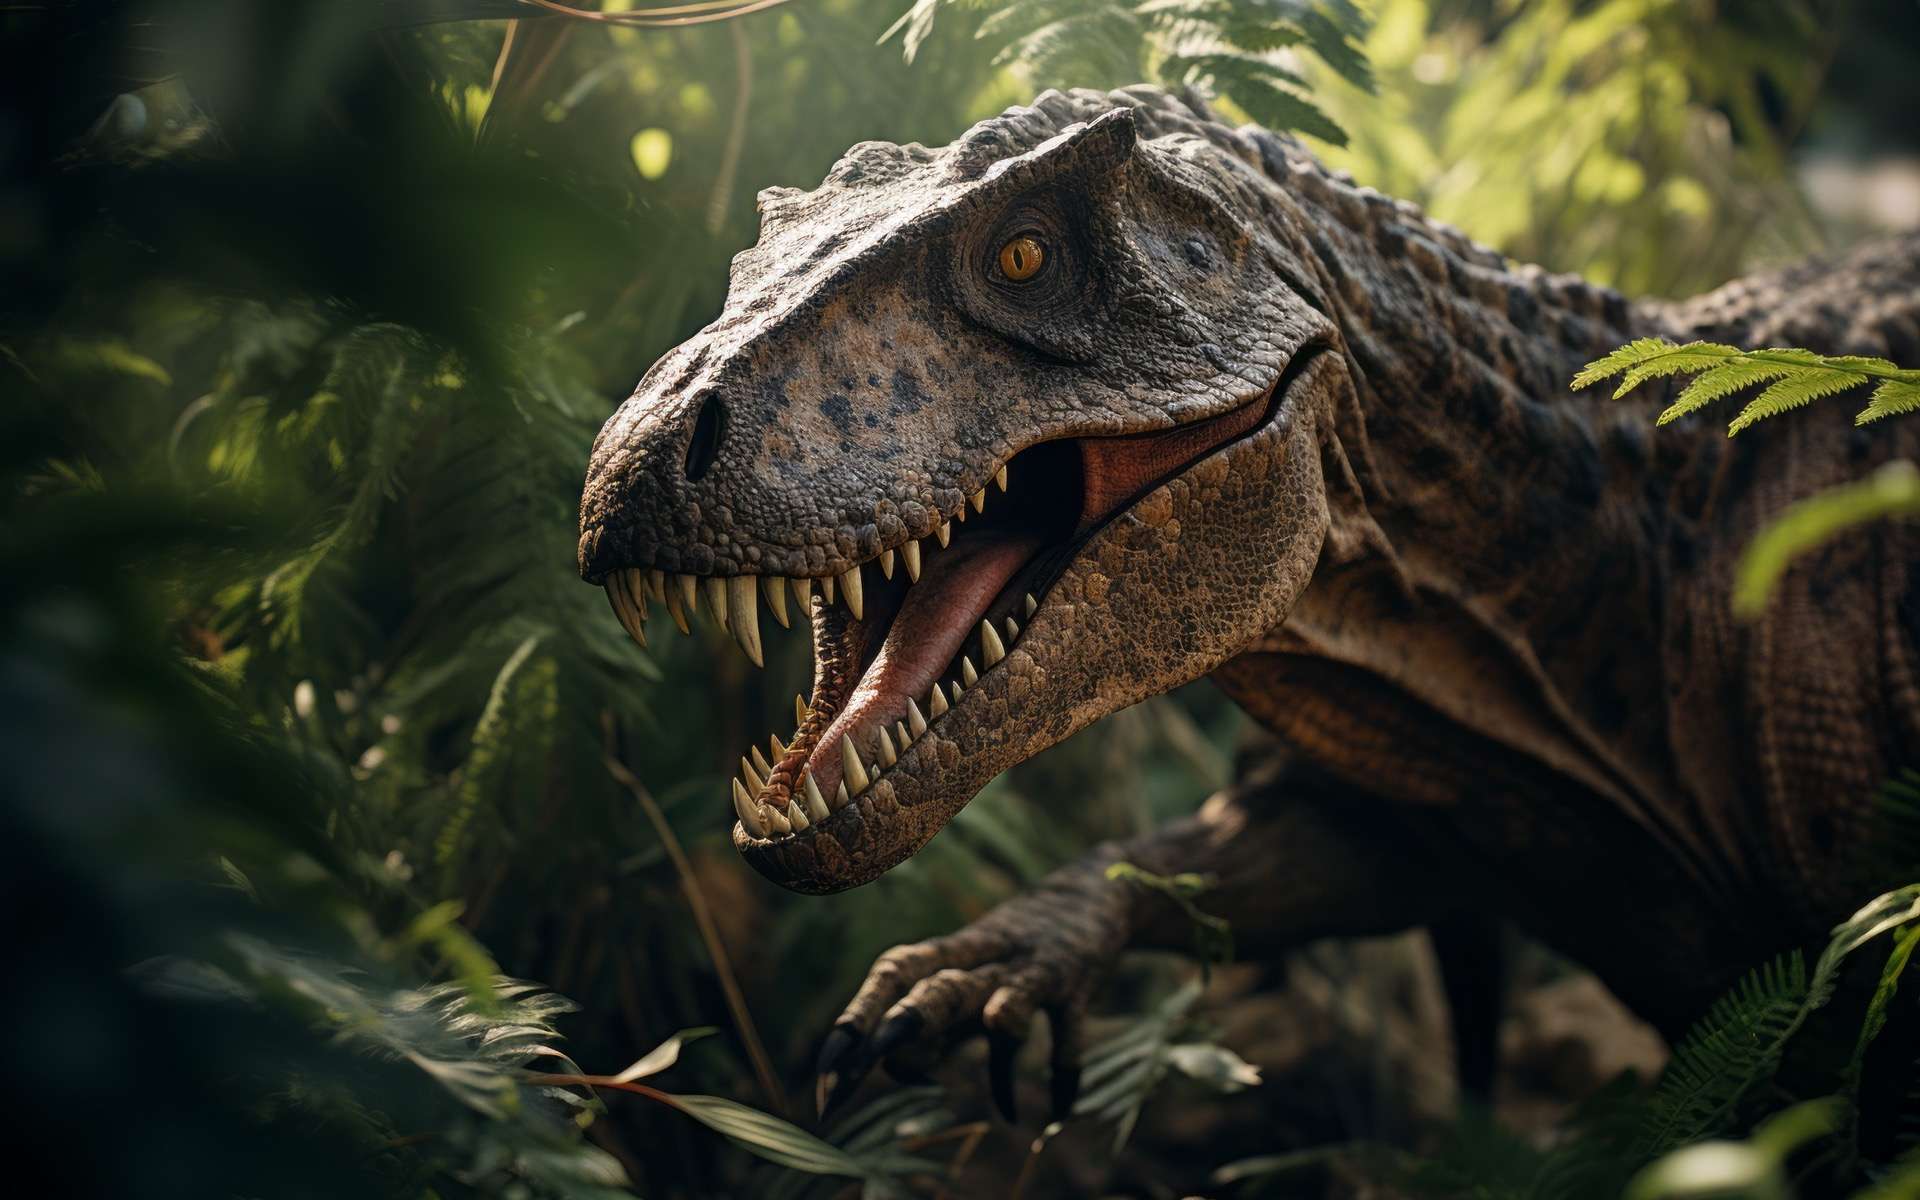 Un tyrannosaure découvert avec son dernier repas dans l'estomac